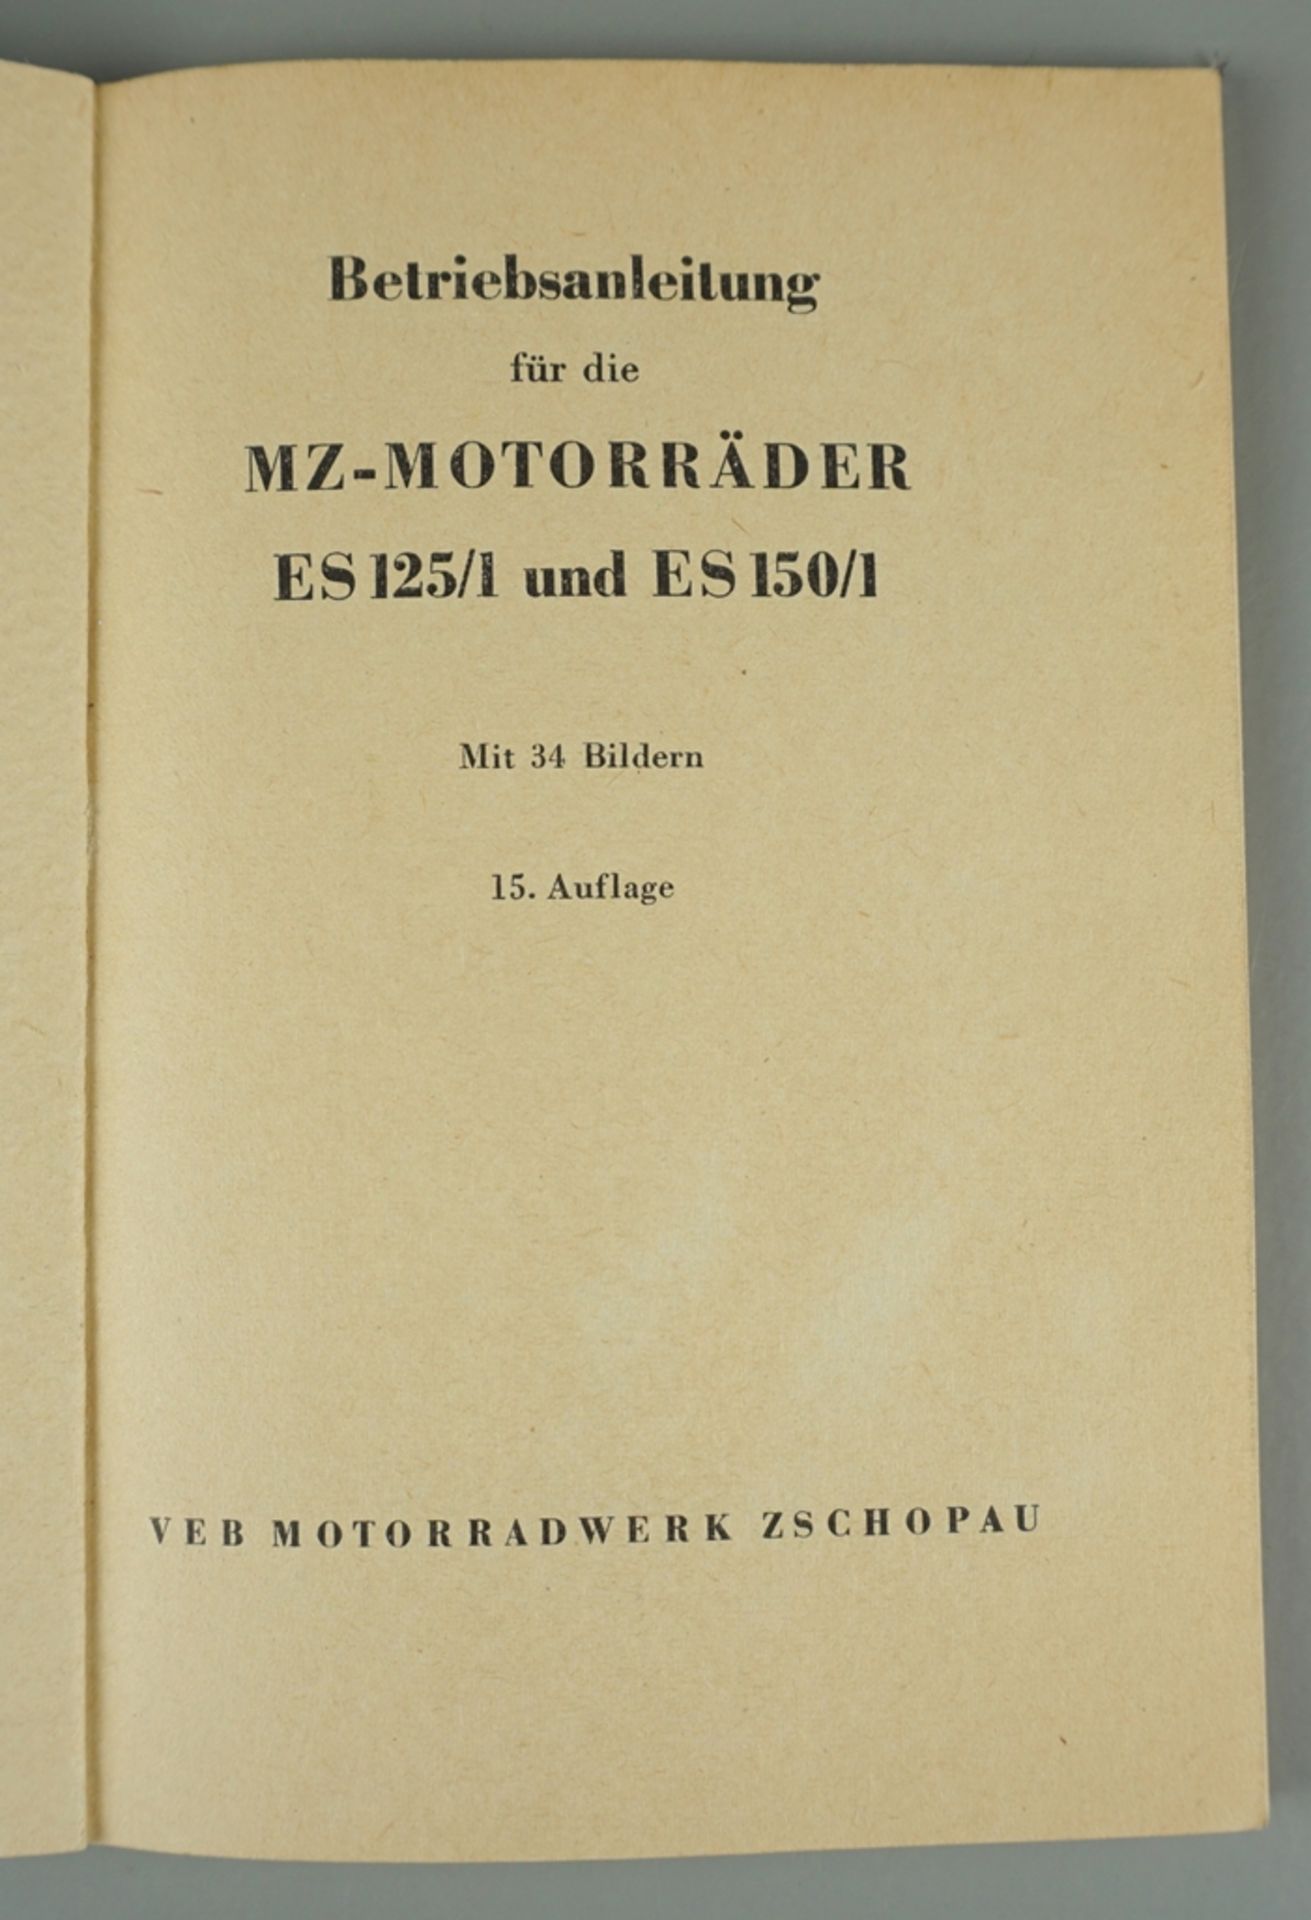 Betriebsanleitung für MZ-Motorräder ES125/1 - ES 150/1 - Image 2 of 2